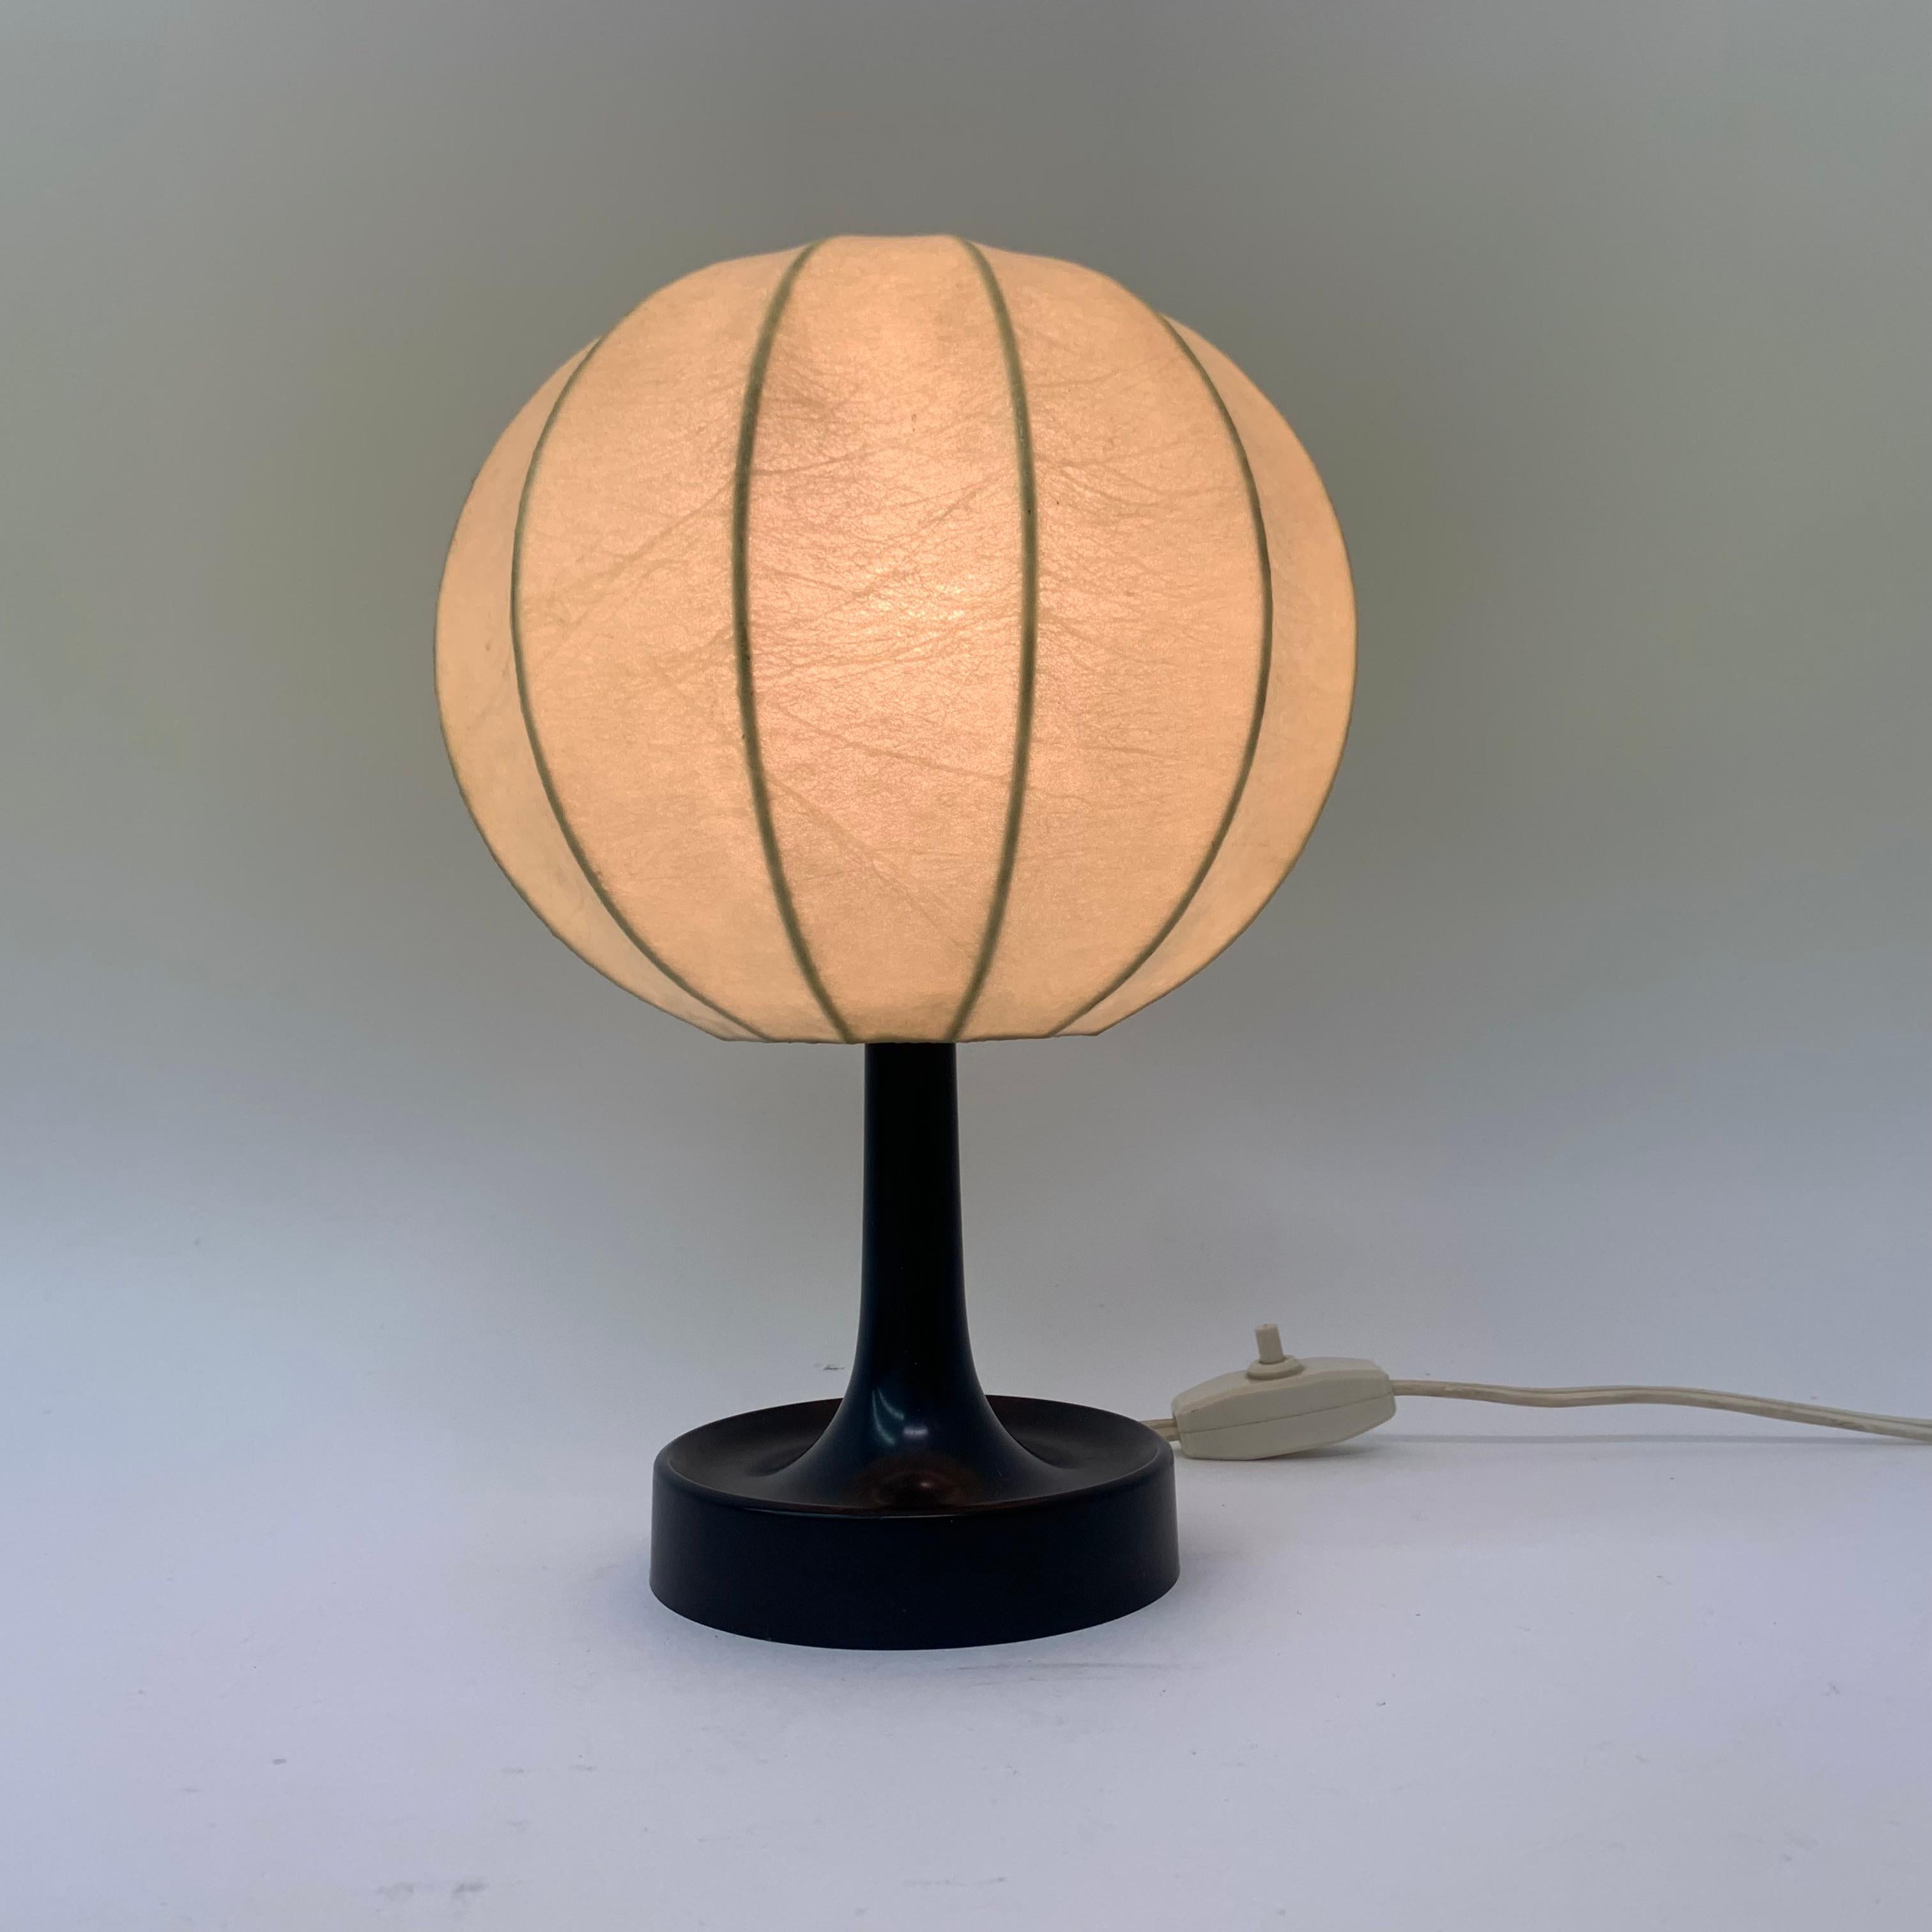 Cocoon-Tischlampe von Alfred Wauer für Goldkant, 1960er Jahre (Moderne der Mitte des Jahrhunderts)